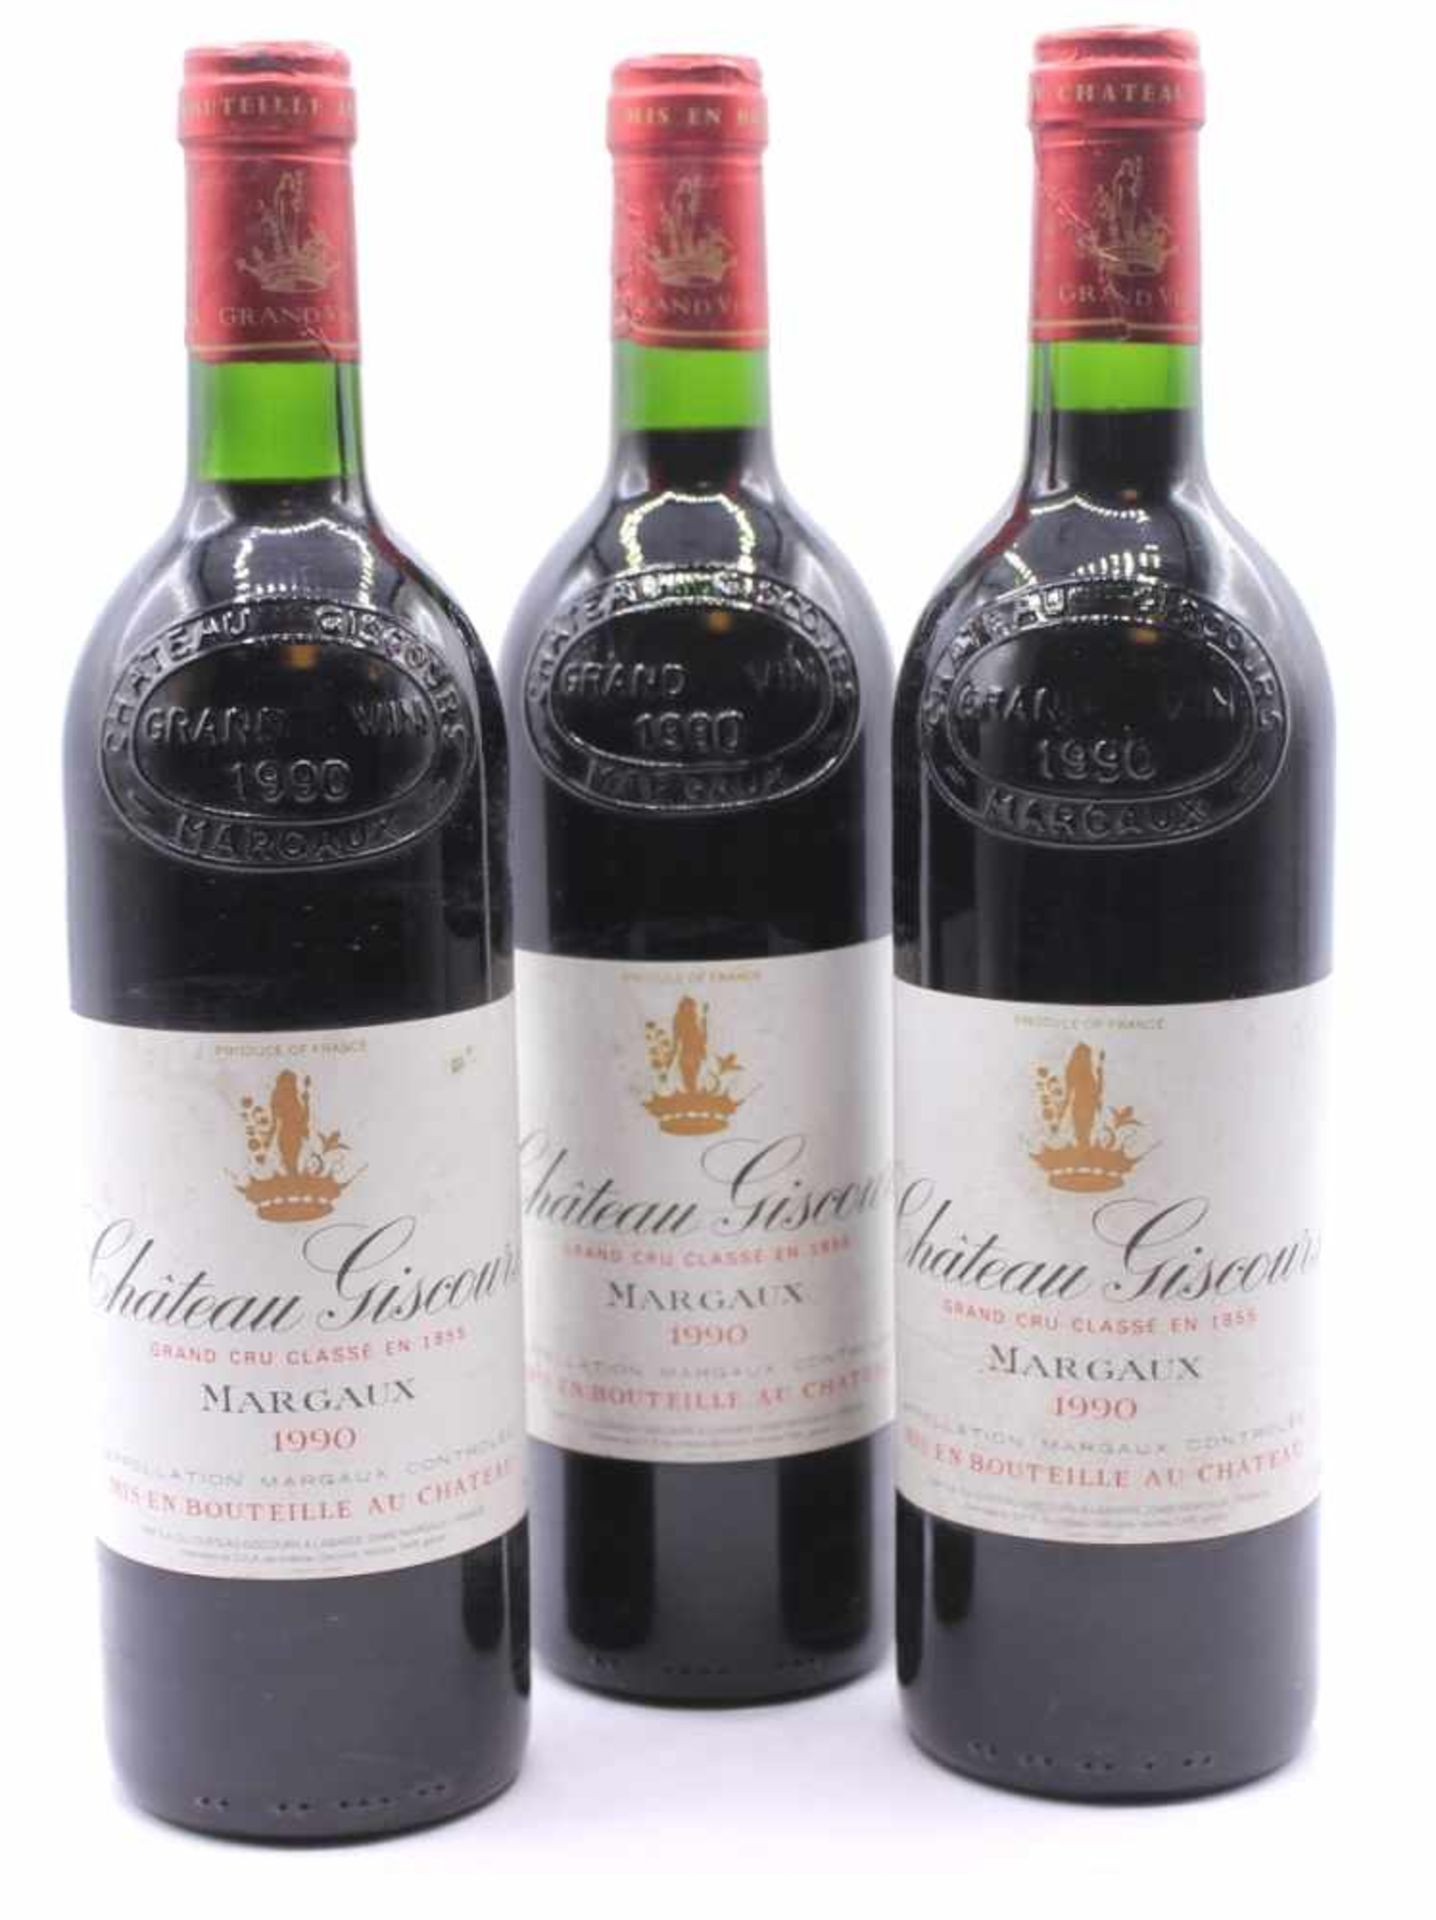 3 Flaschen Wein - Chateau Giscours Grand Cru Classe en 1855, MARGAUX 1990, Appellation Margaux